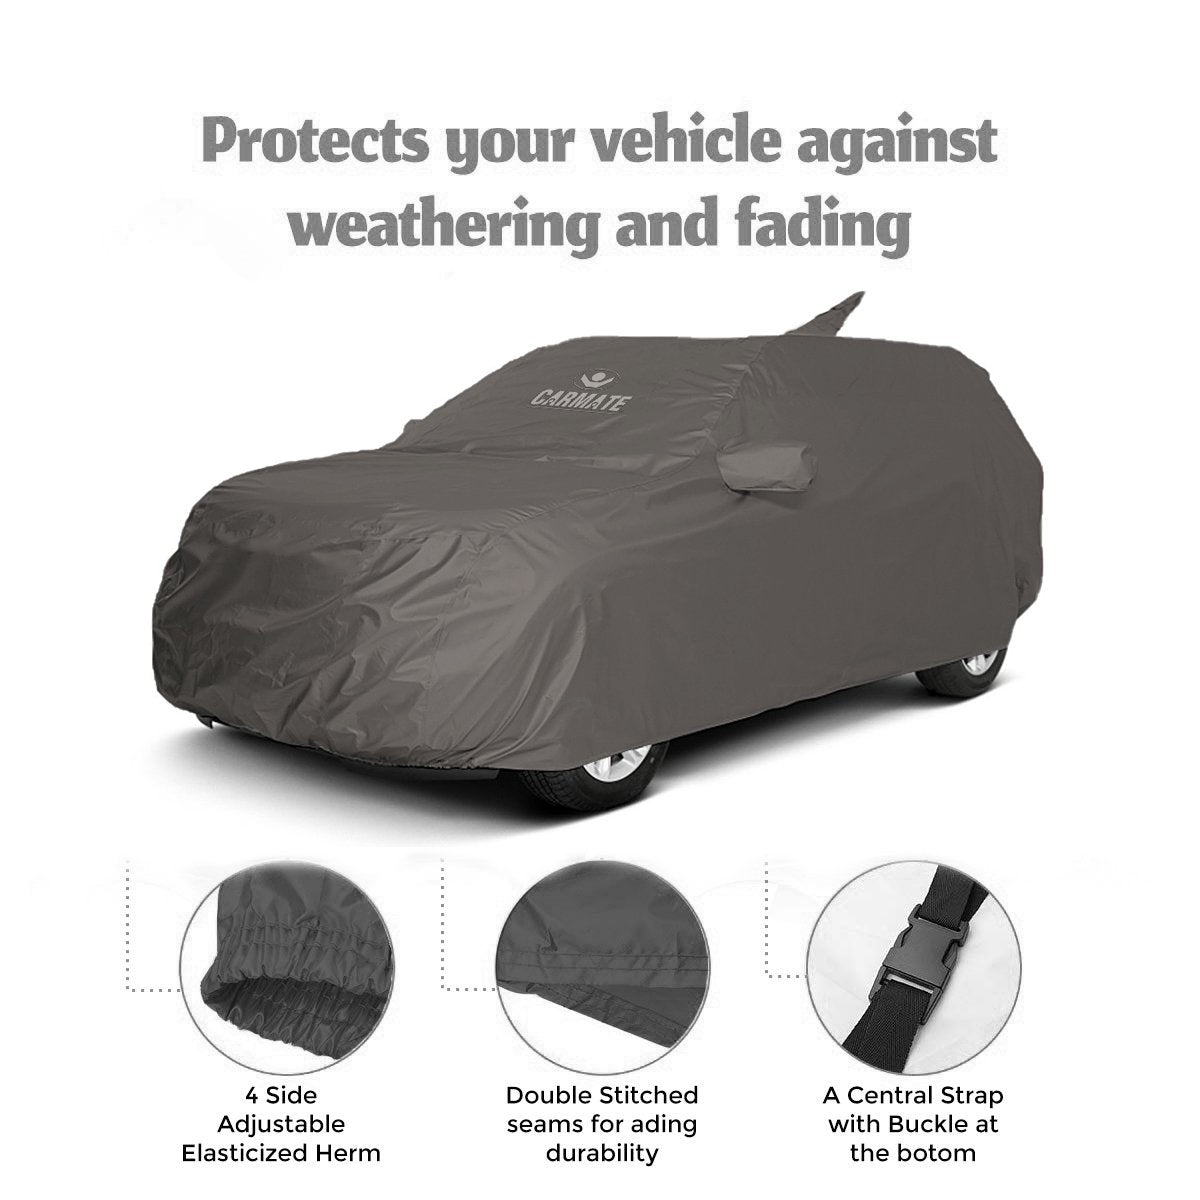 Carmate Car Body Cover 100% Waterproof Pride (Grey) for Renault - Duster - CARMATE®